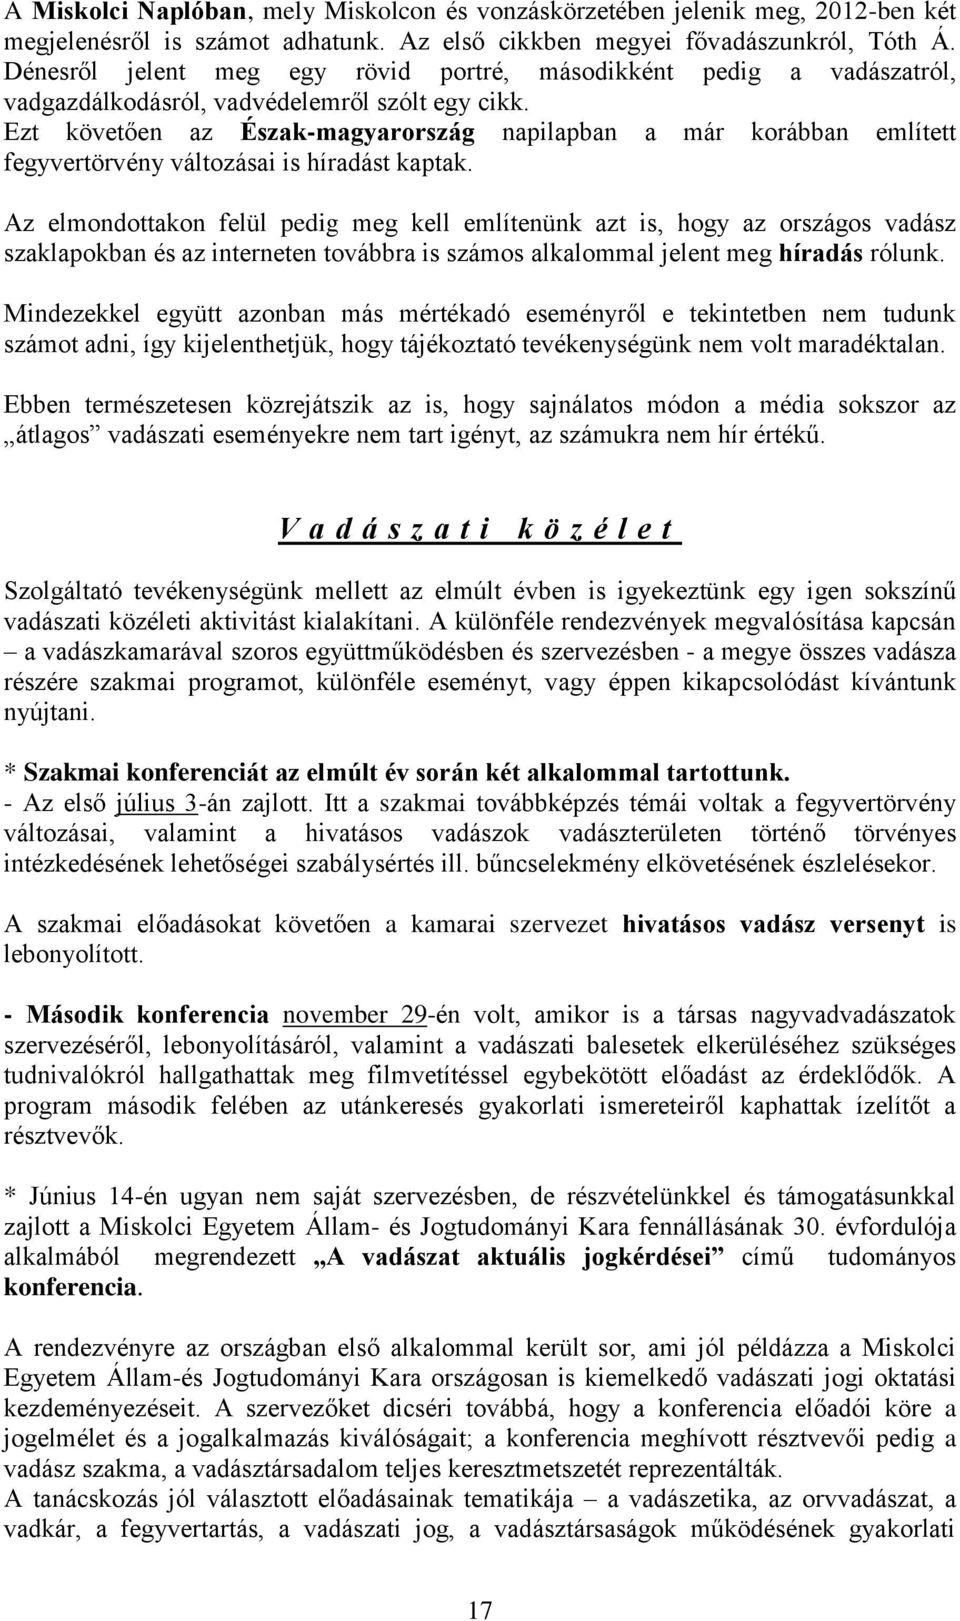 Ezt követően az Észak-magyarország napilapban a már korábban említett fegyvertörvény változásai is híradást kaptak.